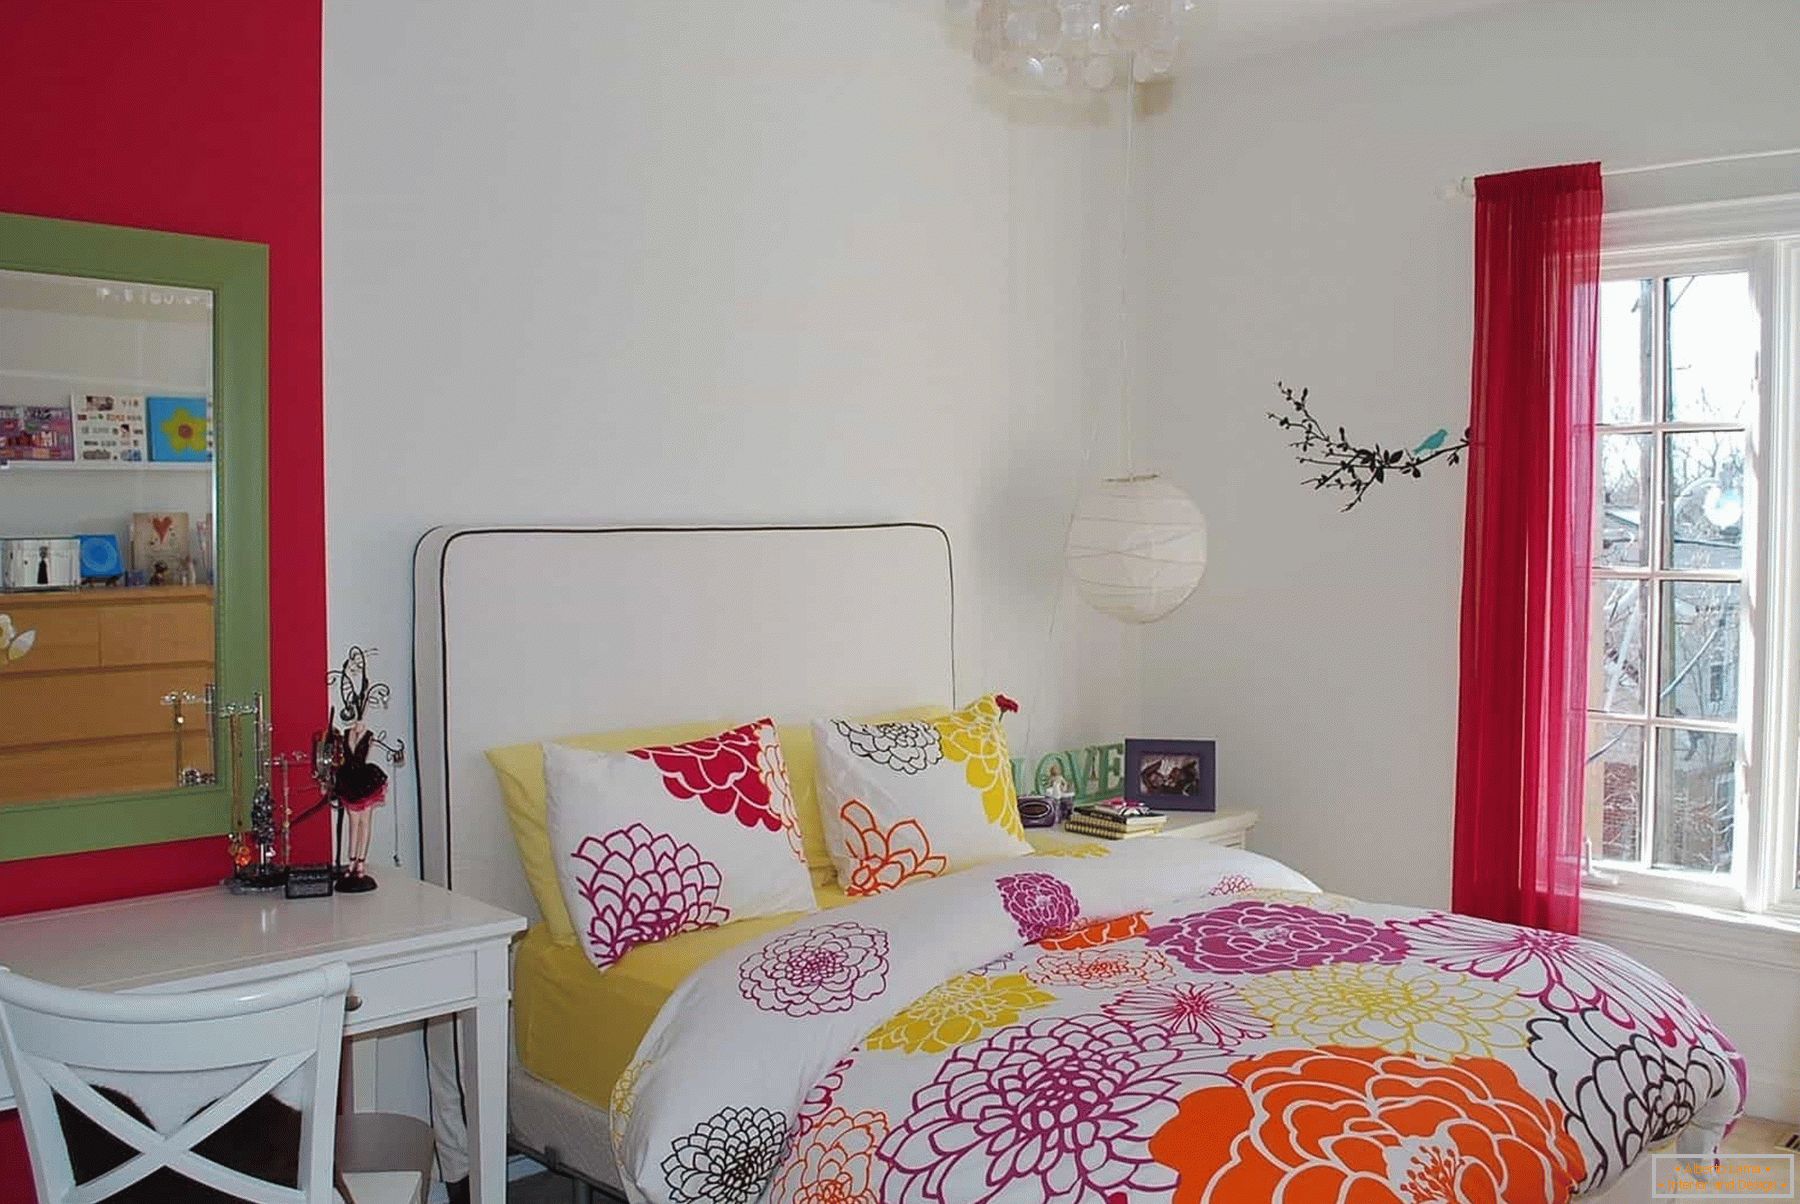 Nella stanza bianca di una ragazza - biancheria da letto colorata e elementi decorativi